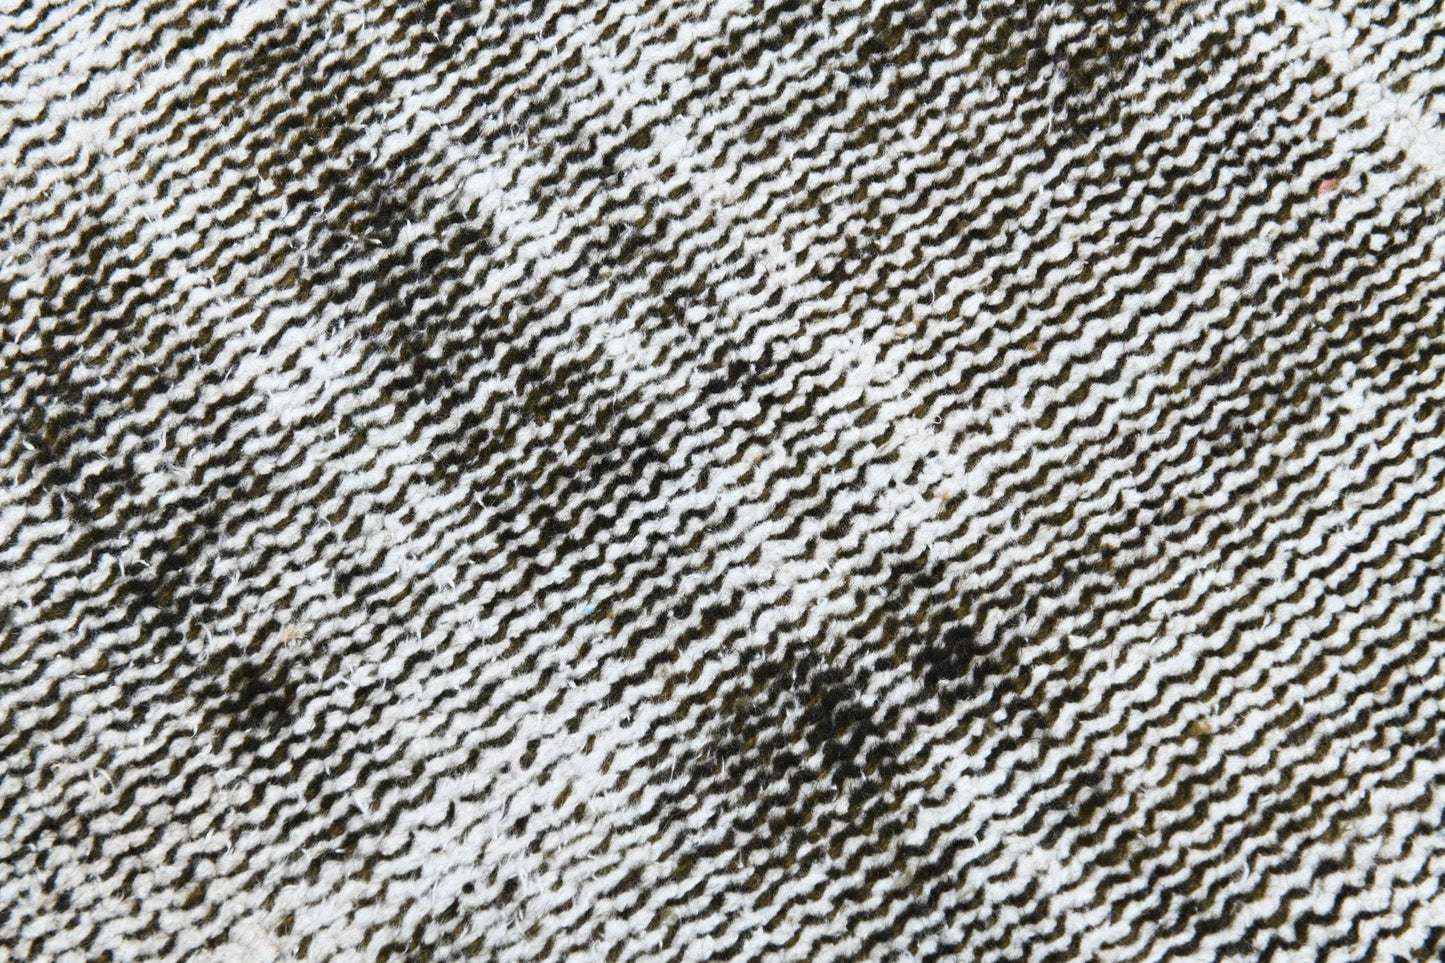 2' x 6' Vintage rug, Bathroom Vintage rug, Bedroom Vintage rug, Black-Gray Vintage rug, Camouflage Vintage rug, Cotton Vintage rug, Distressed Vintage rug, Kids Vintage rug, Living Room Vintage rug, Nursery Vintage rug, Vintage Runner, Wool Vintage rug, Vintage rug